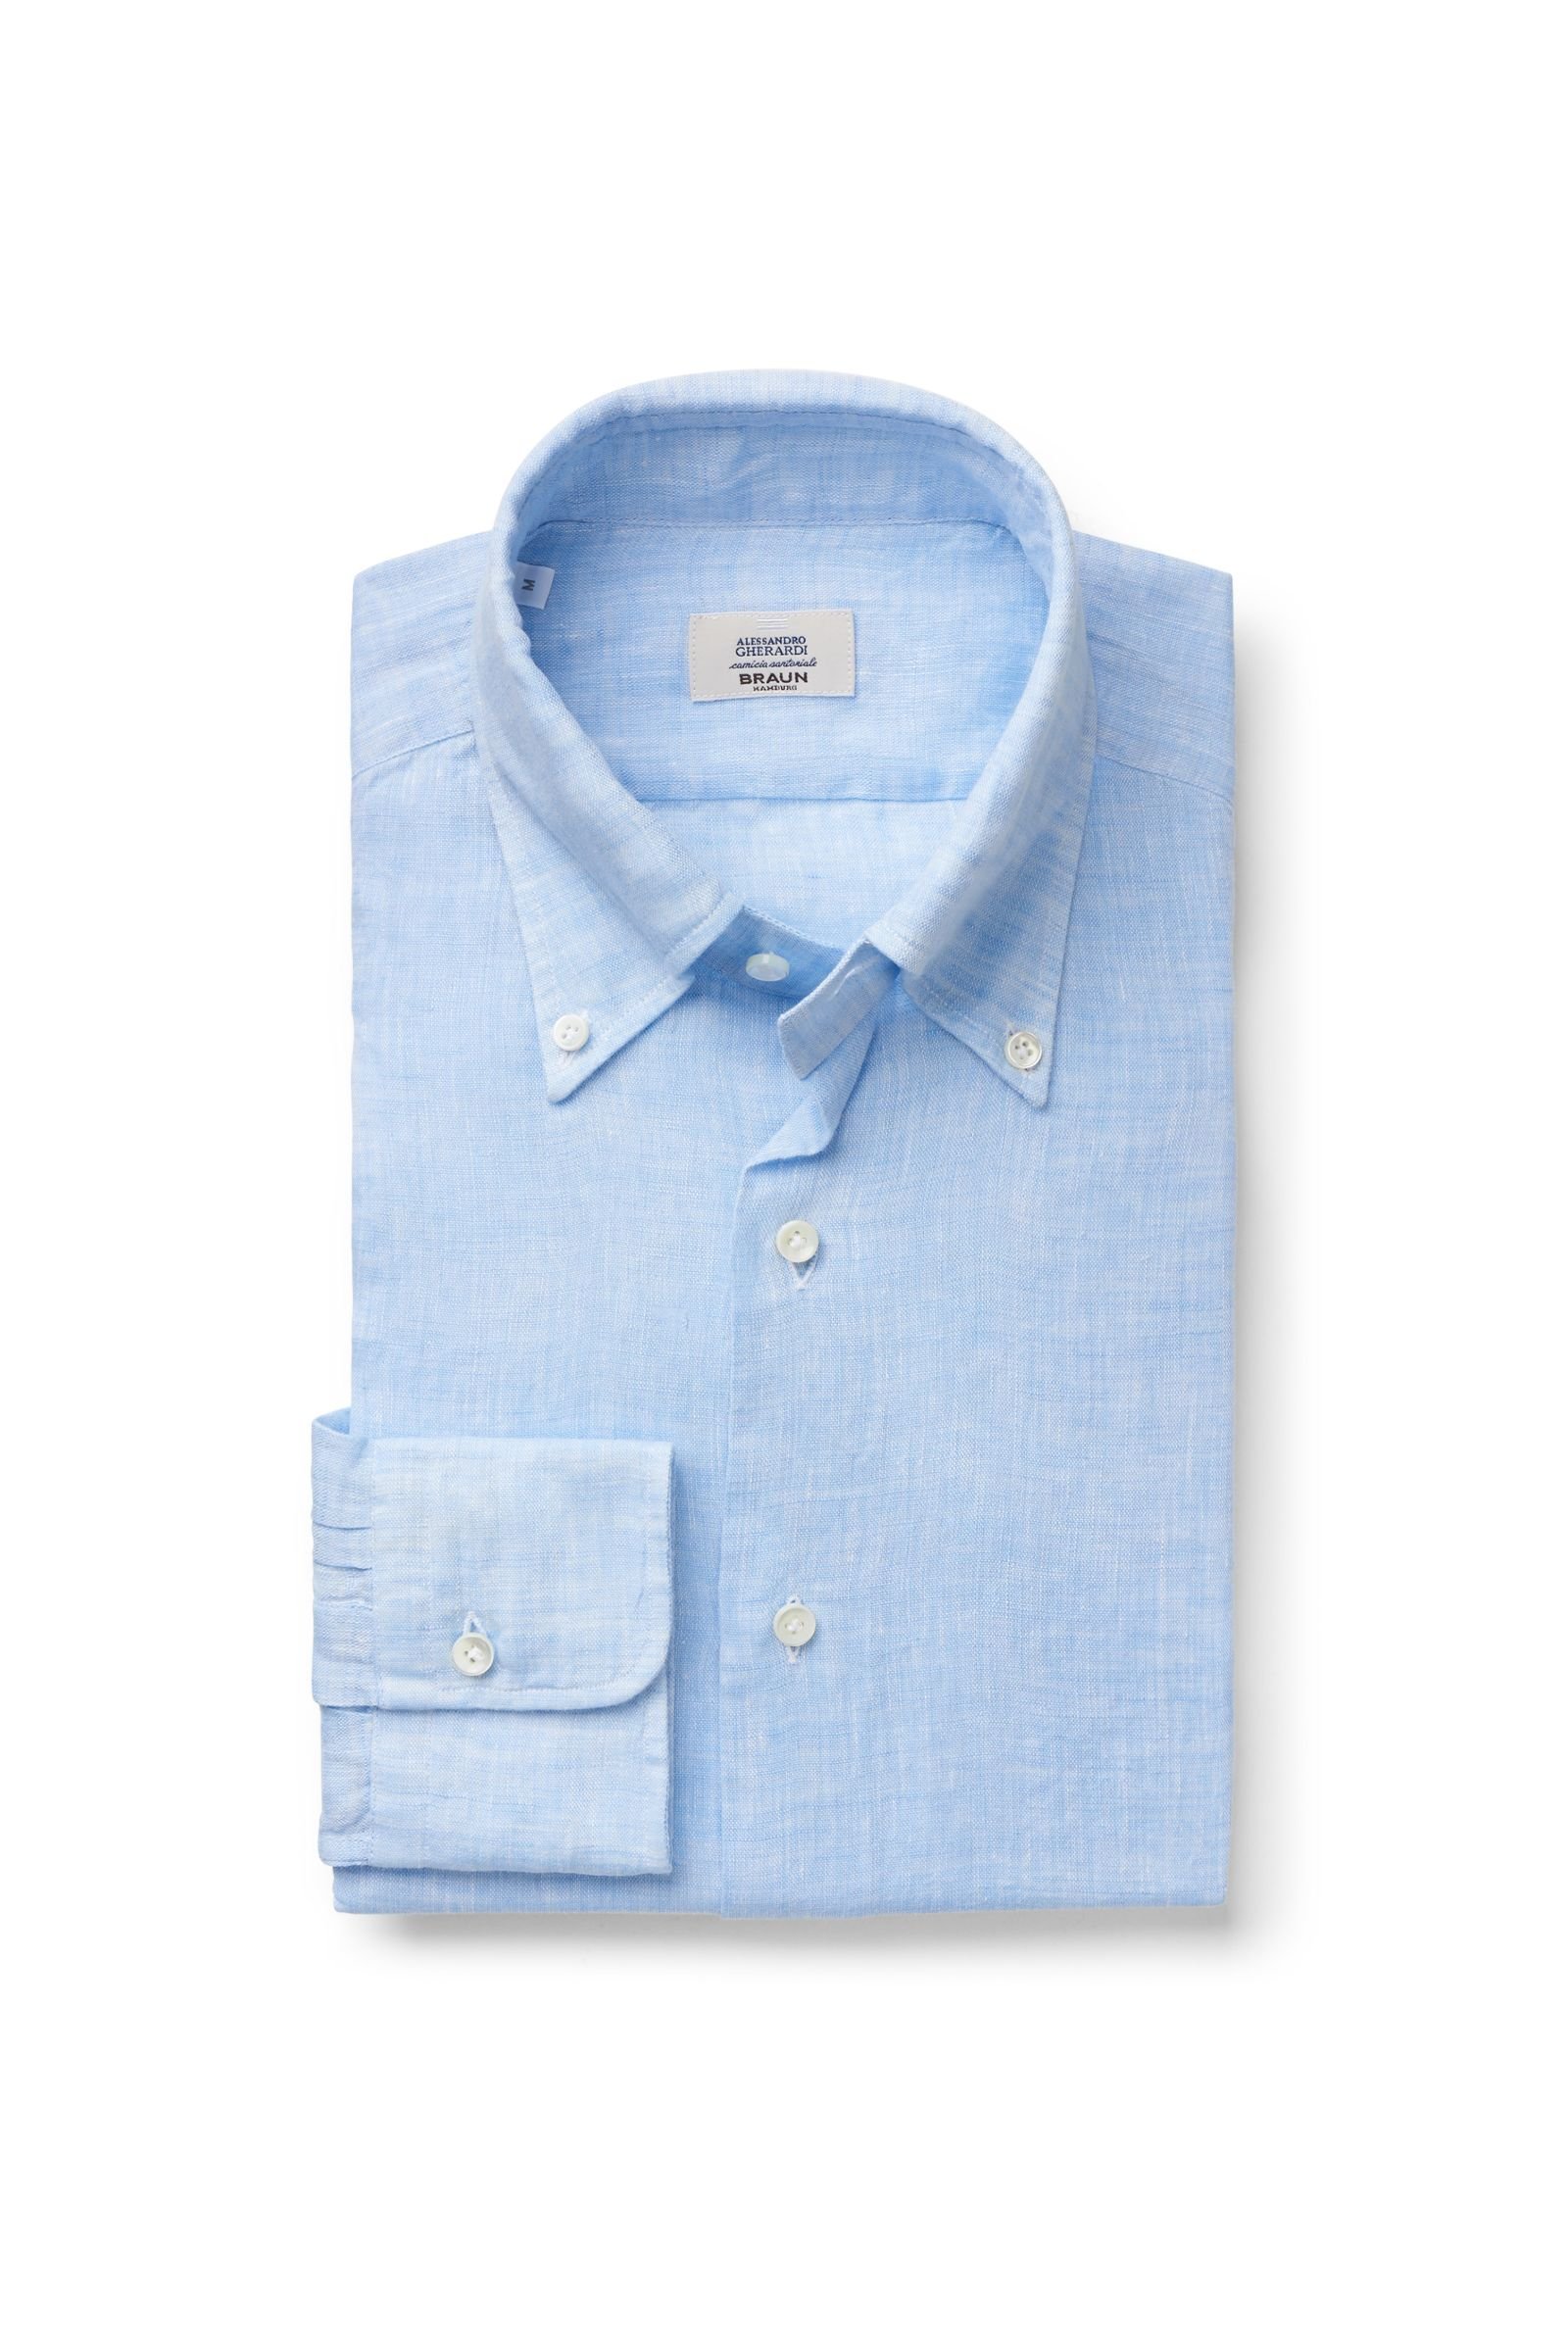 Linen shirt button-down collar light blue